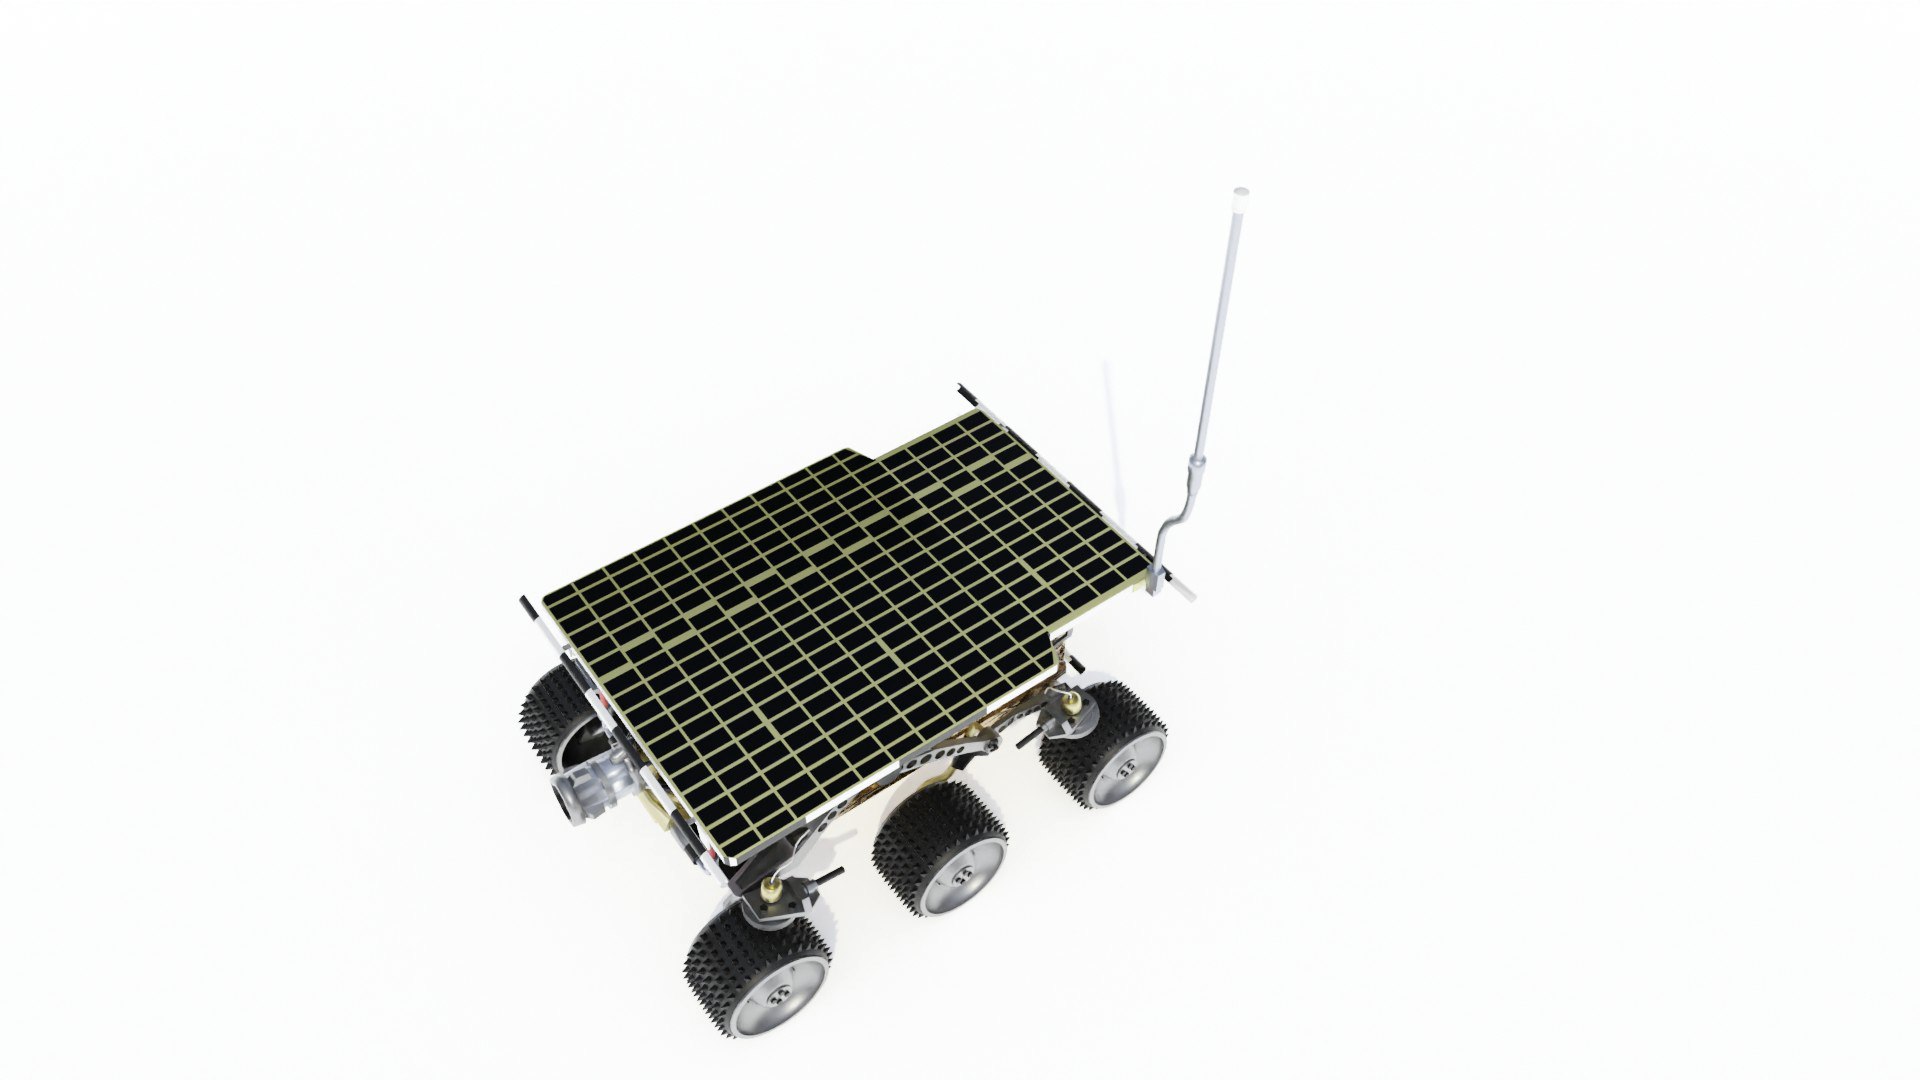 sojourner spacecraft model